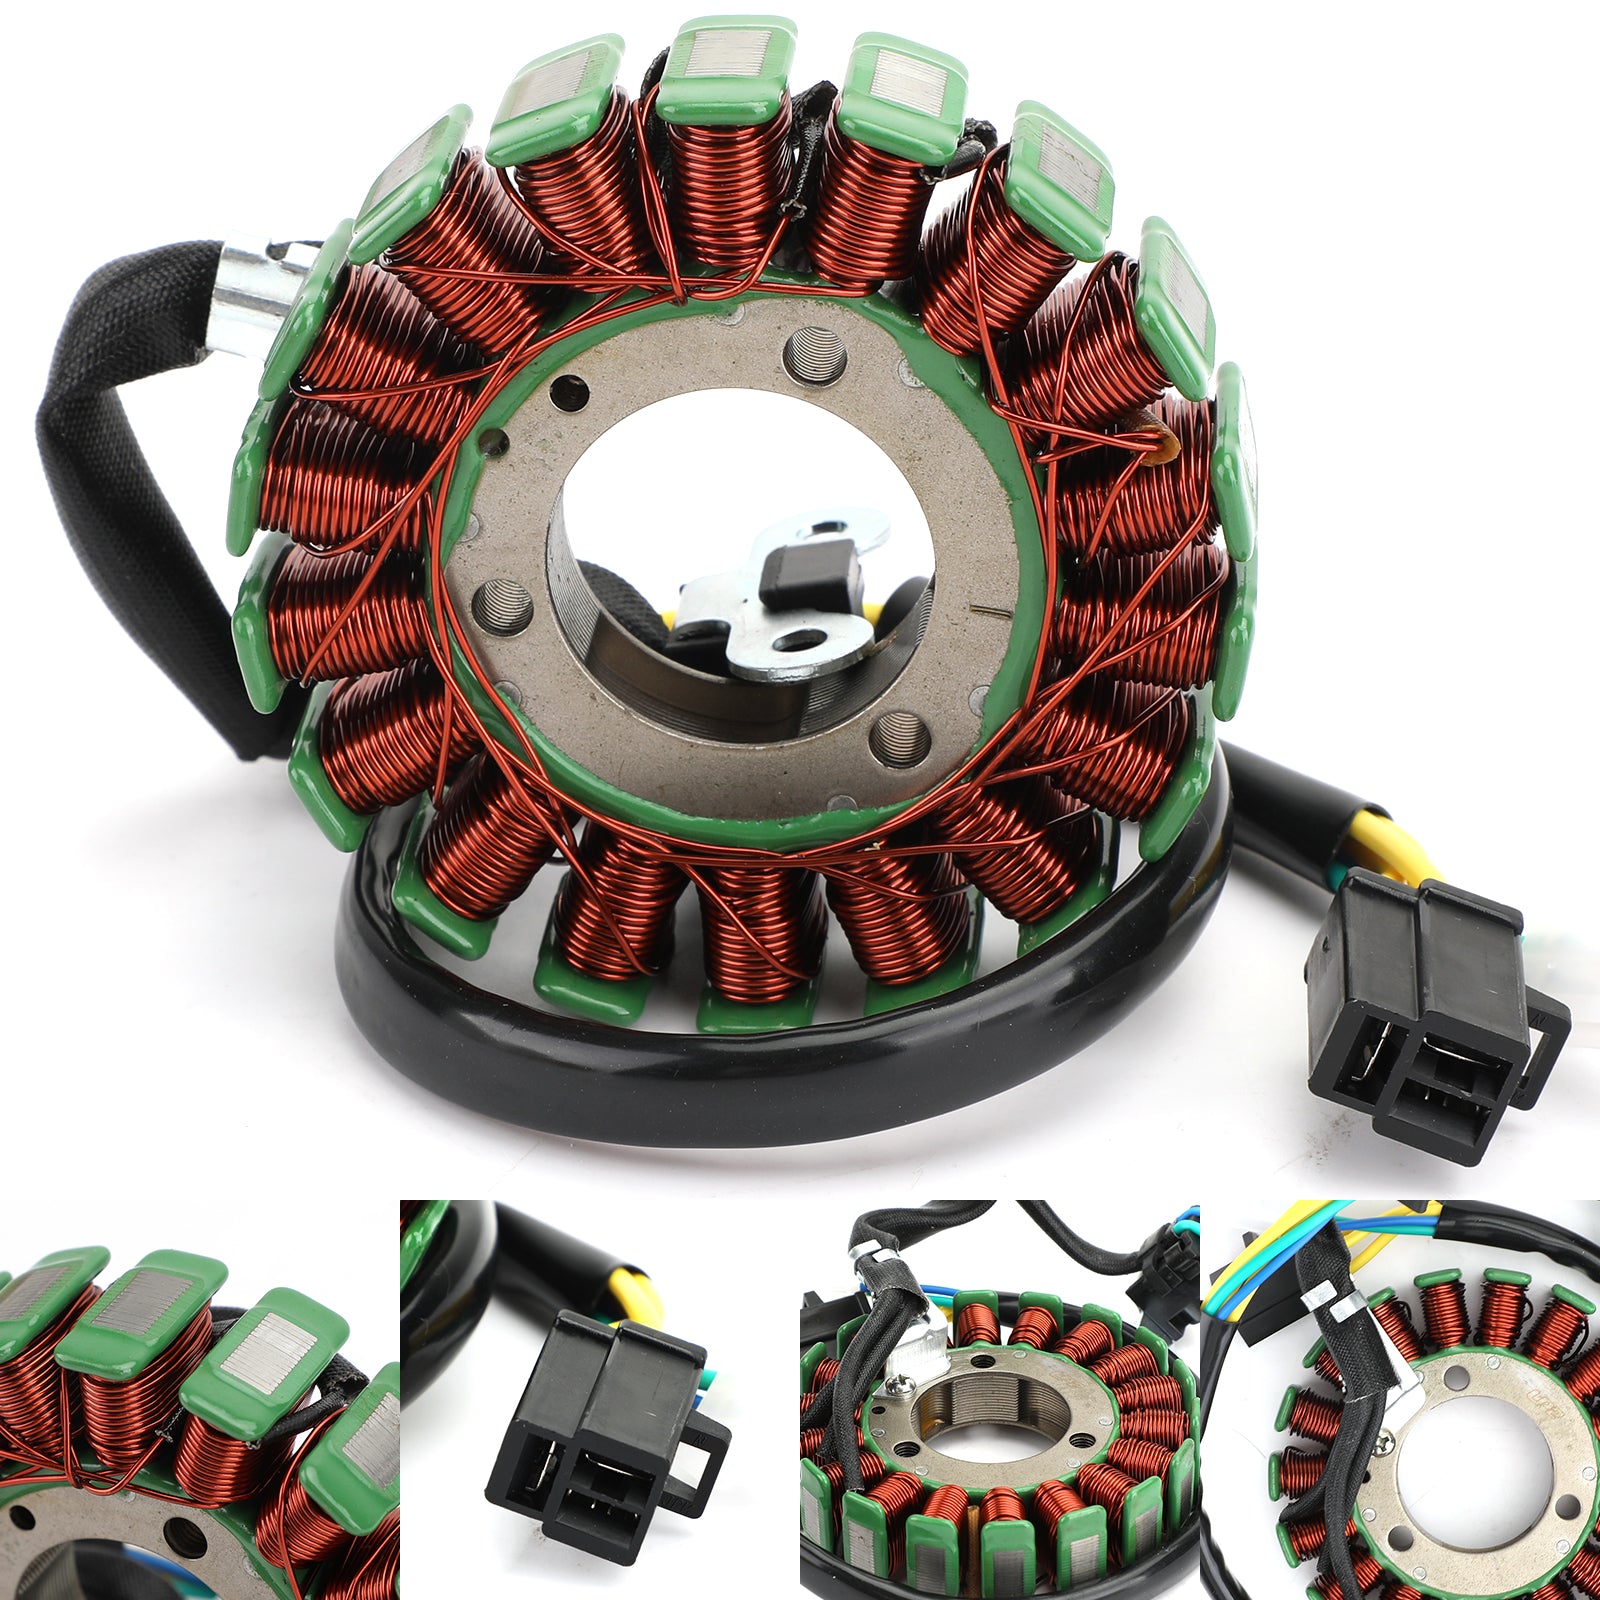 Bobina magnete statore per Suzuki RV125 RV200 Van GZ125 Marauder 98-11 32101-13G10 tramite fedex